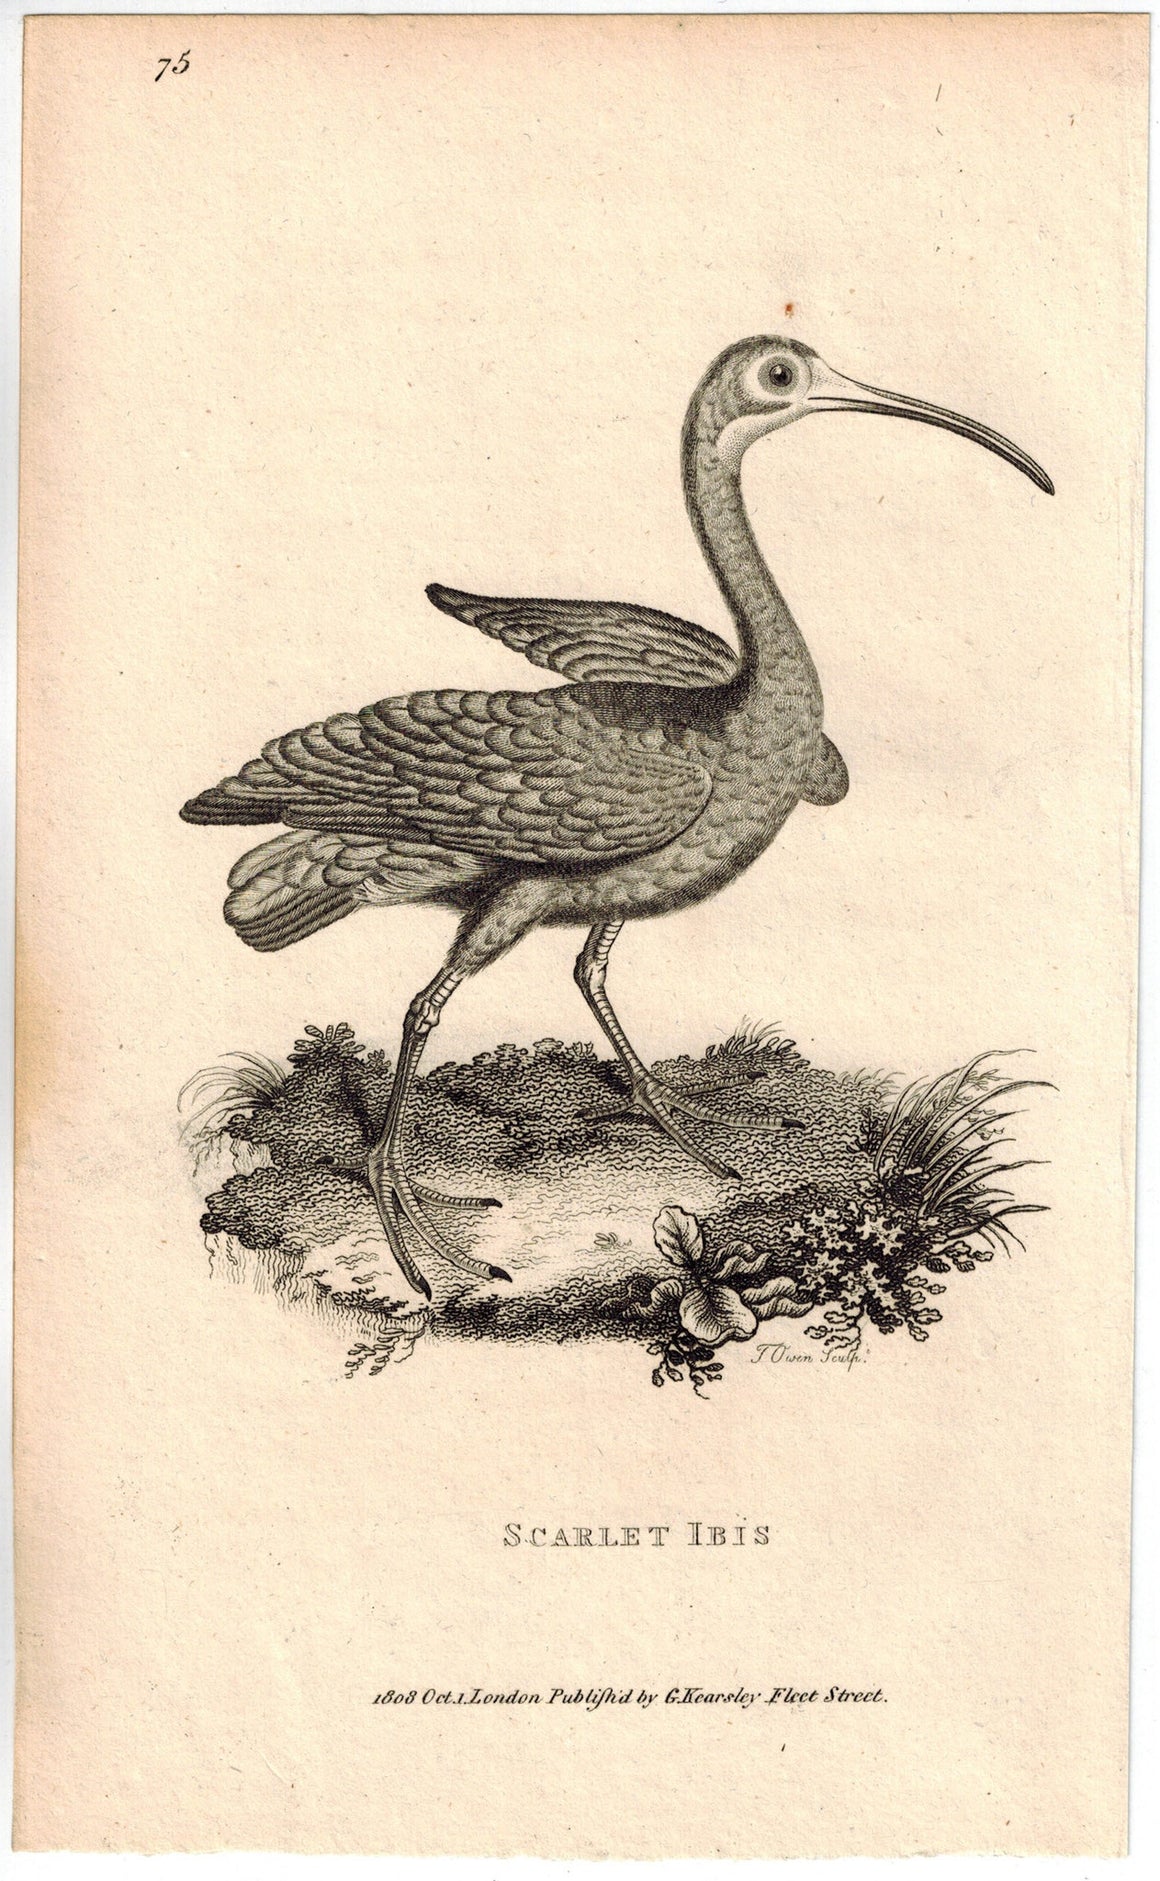 Scarlet Ibis Print 1809 George Shaw Original Engraving